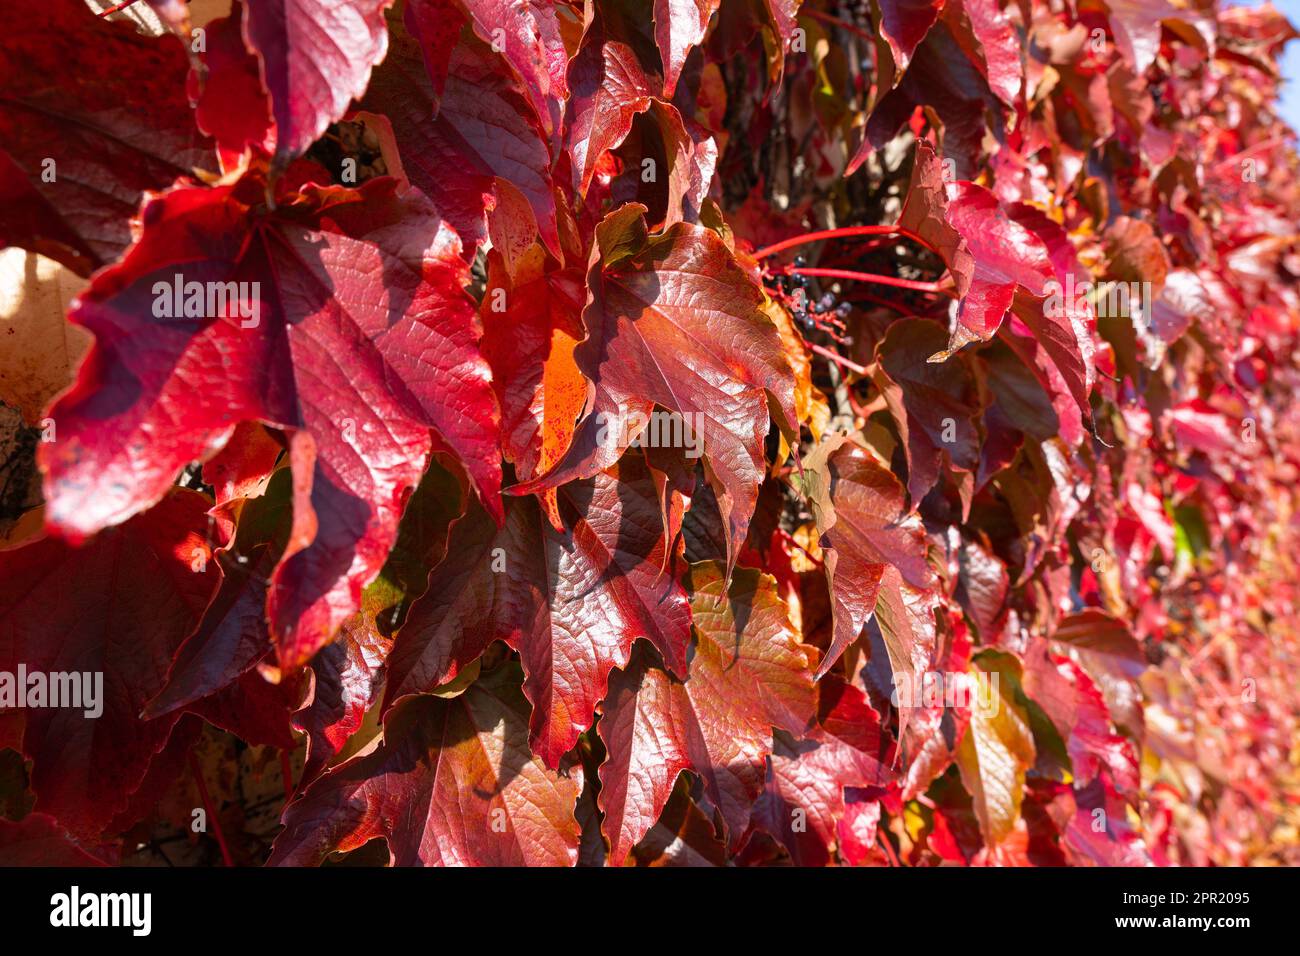 Primer plano de hojas rojas otoñales de vid ornamental con pequeñas bayas. Foto de stock